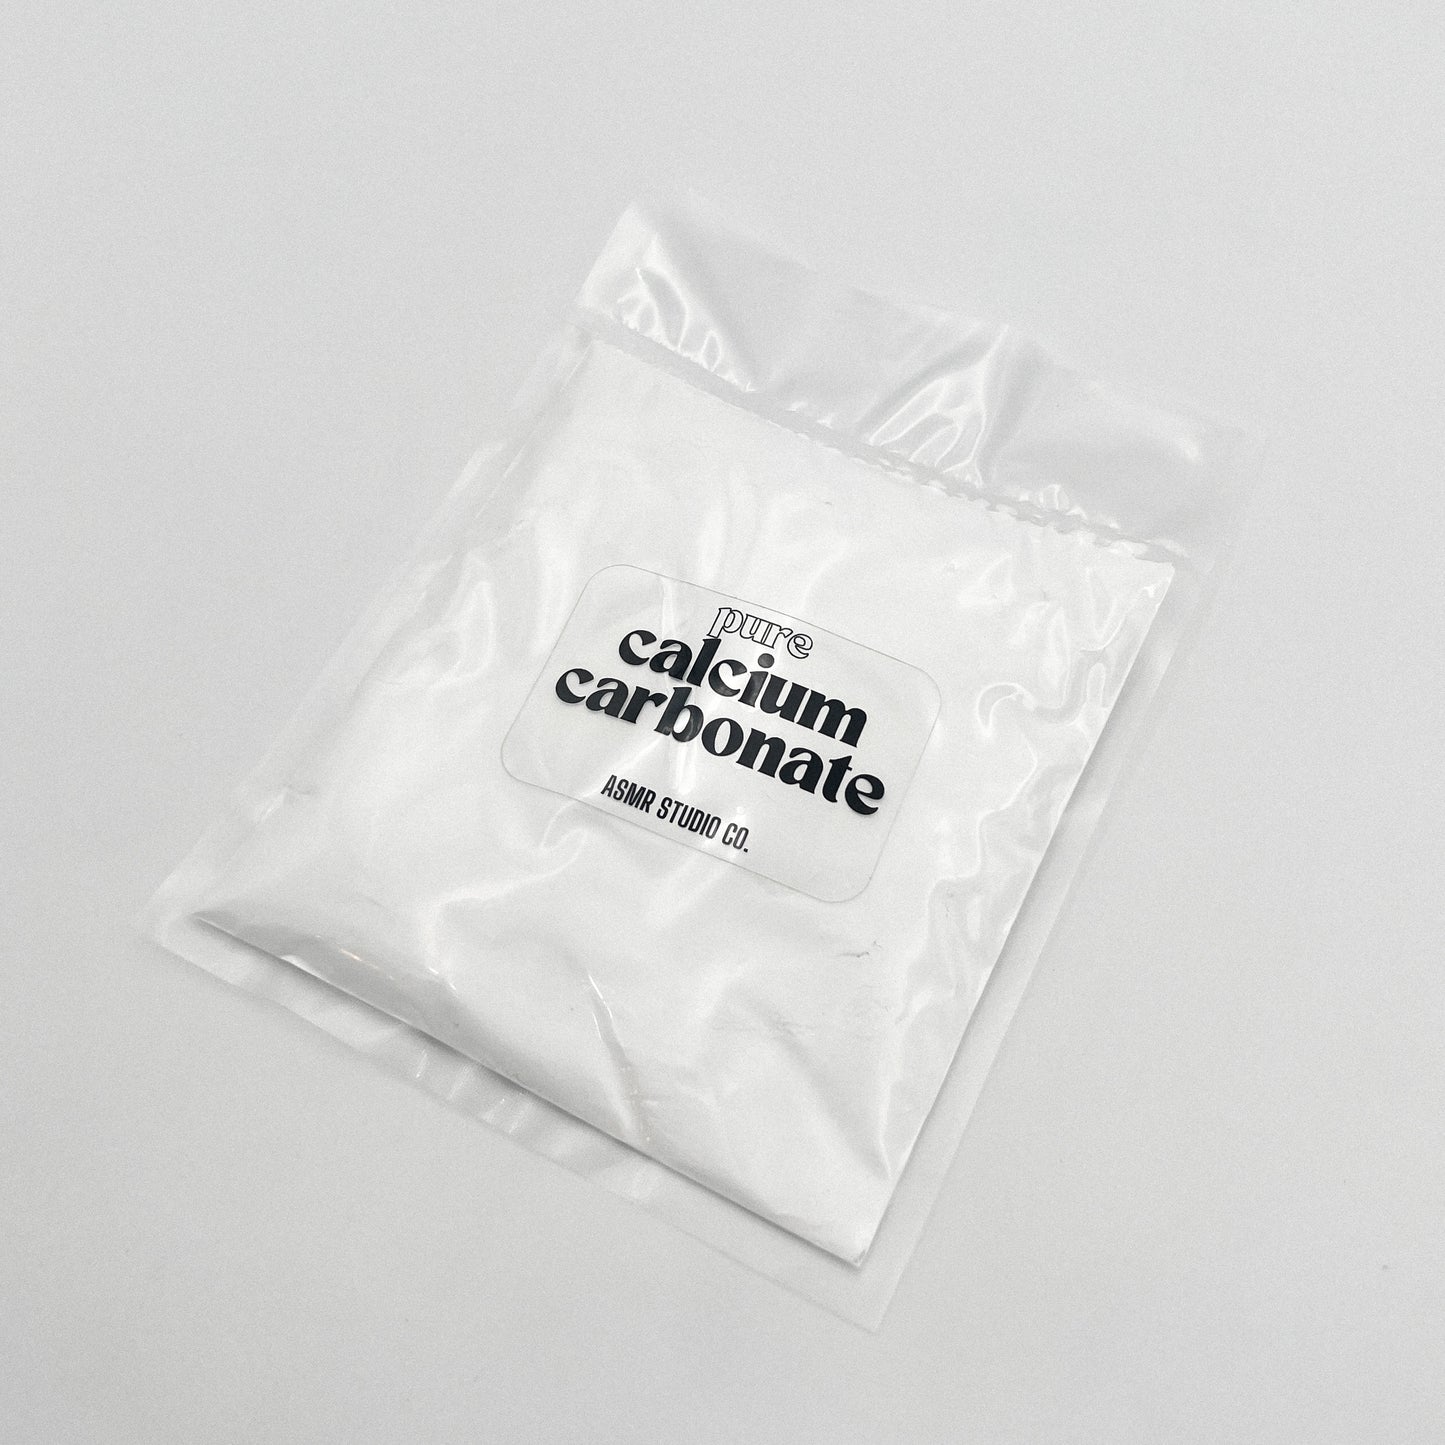 Pure Calcium Carbonate